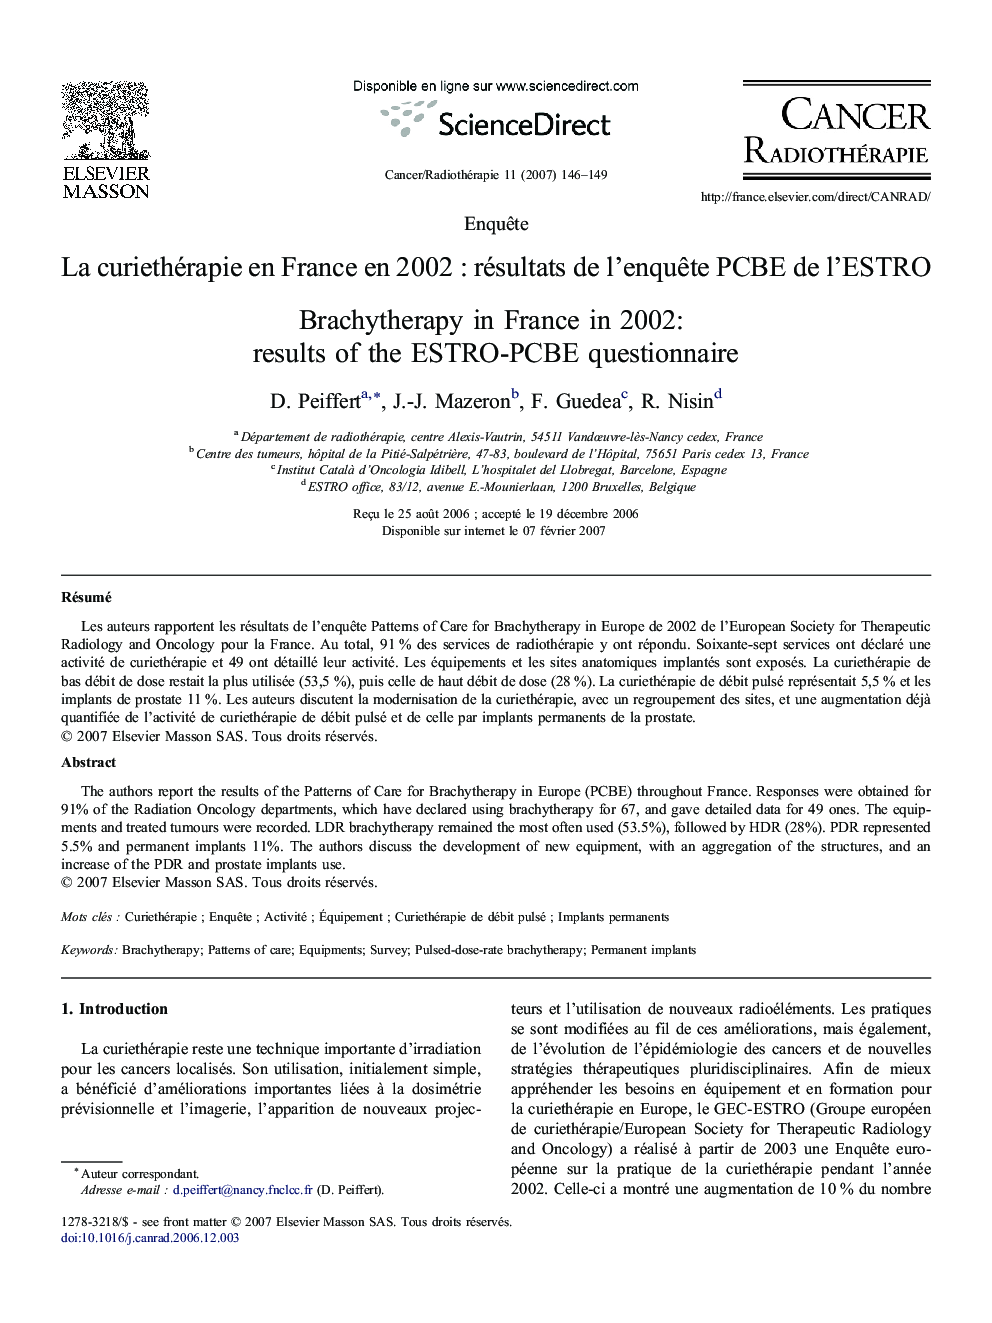 La curiethérapie en France en 2002 : résultats de l'enquête PCBE de l'ESTRO